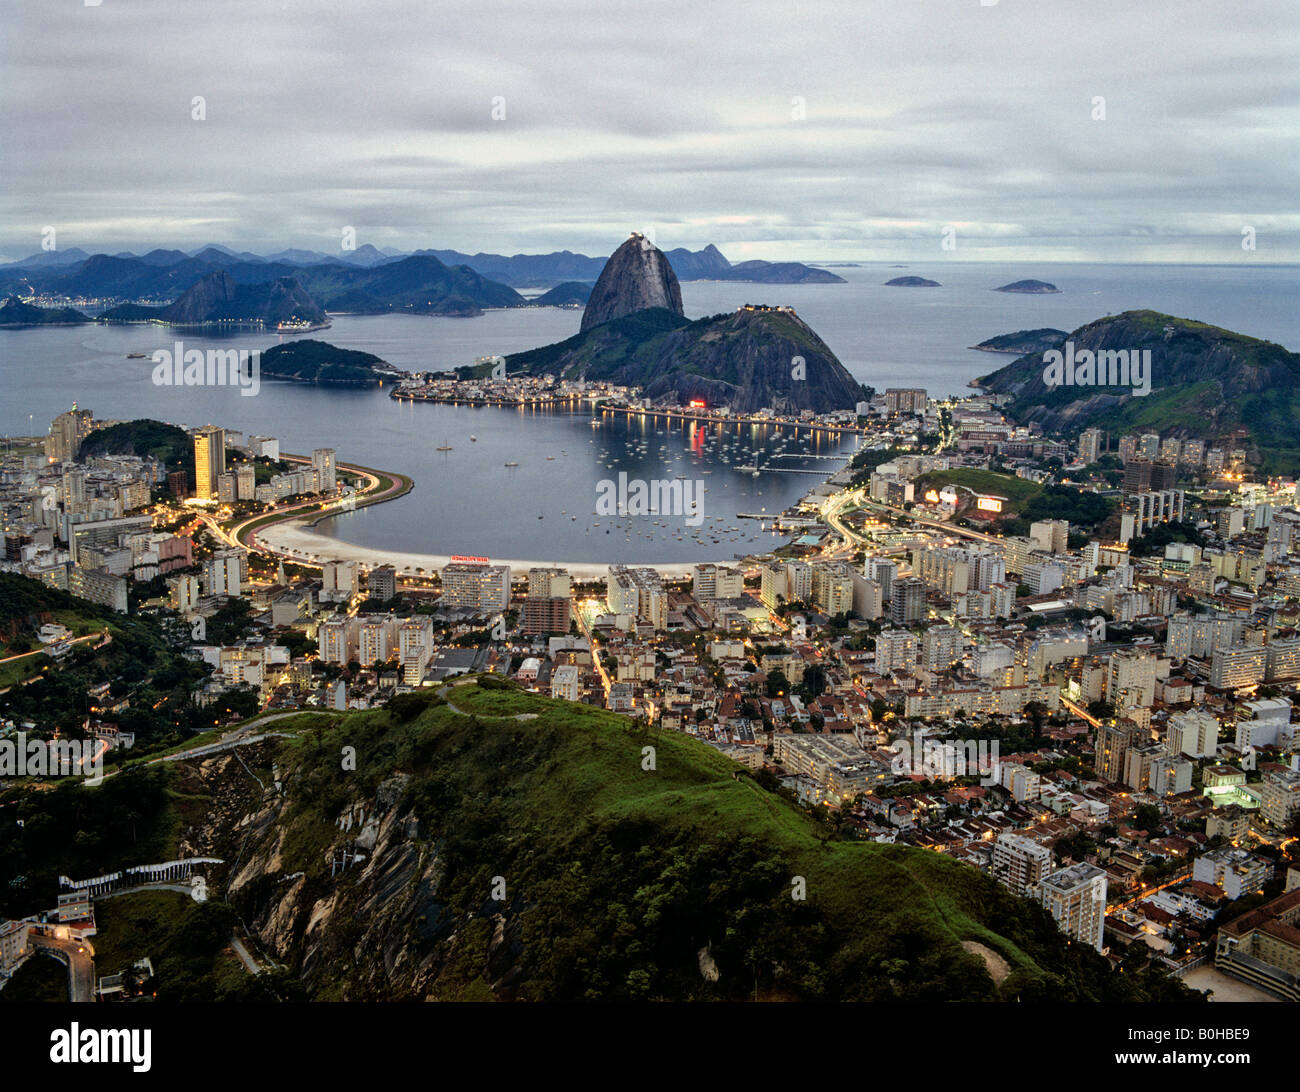 Rio De Janeiro angesehen vom Berg Corcovado, Botafogo, Zuckerhut, Copacabana und Ipanema, Dämmerung, Brasilien, Südamerika Stockfoto